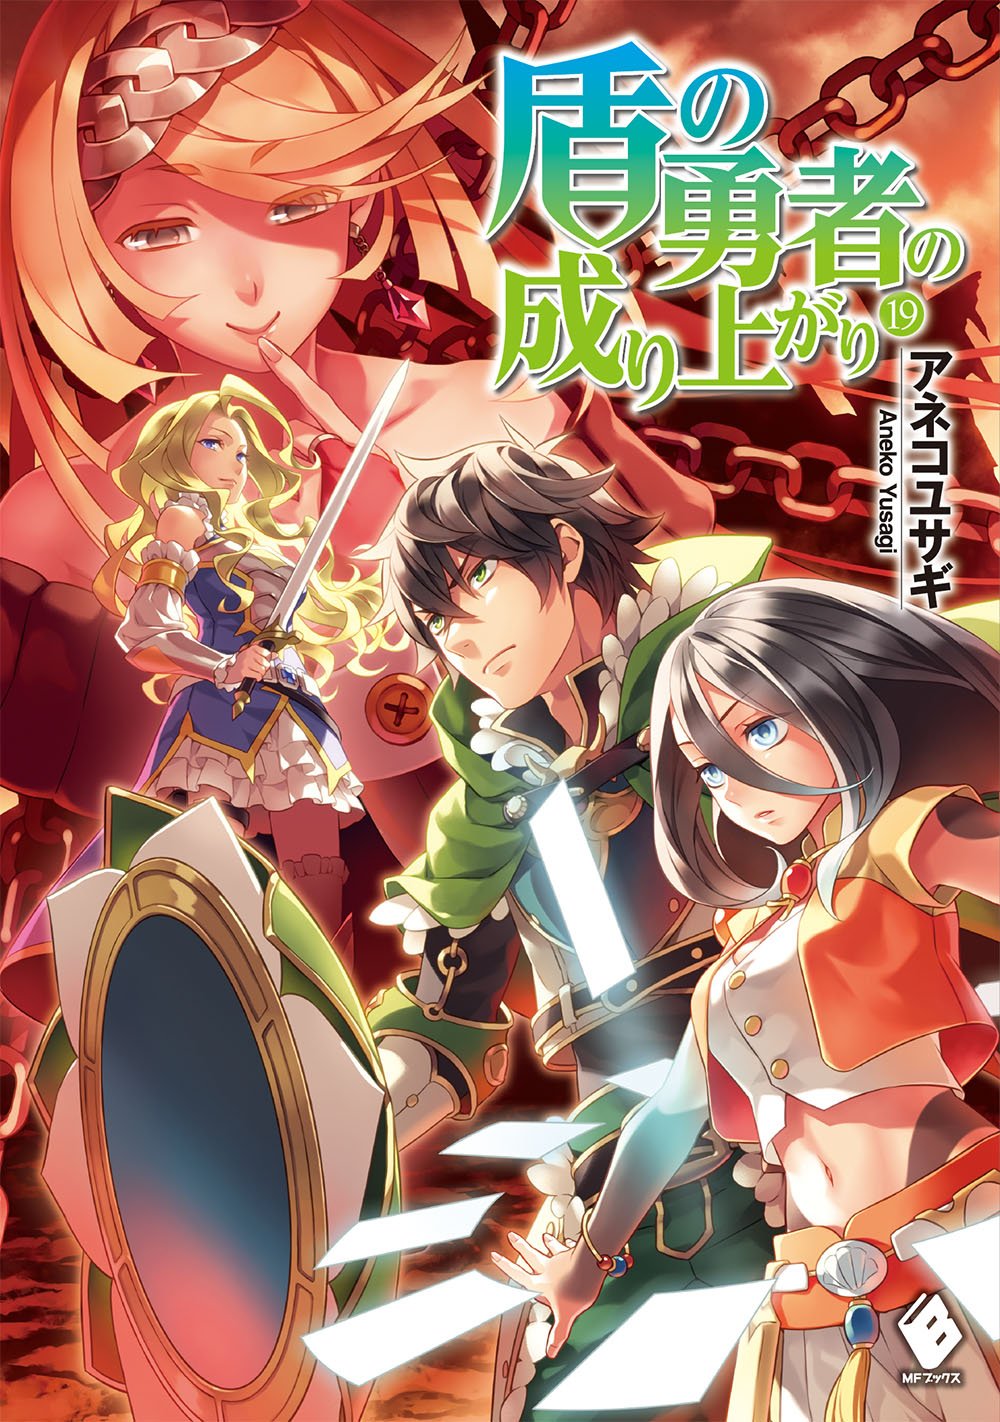 Light Novel Volume 19 | The Rising of the Shield Hero Wiki ...